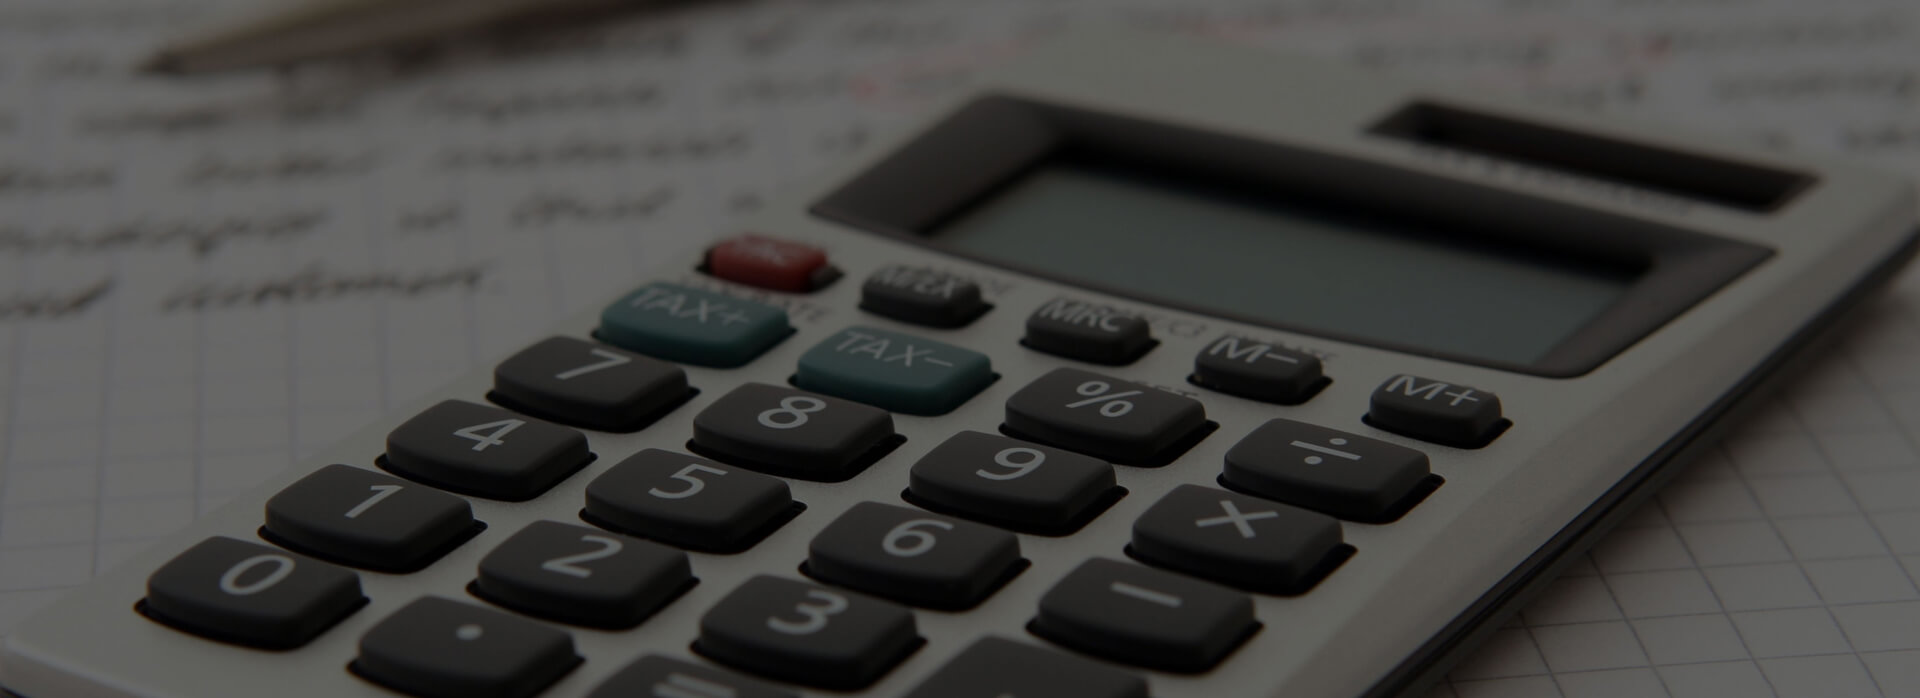 Emergency Tax Refund Calculator